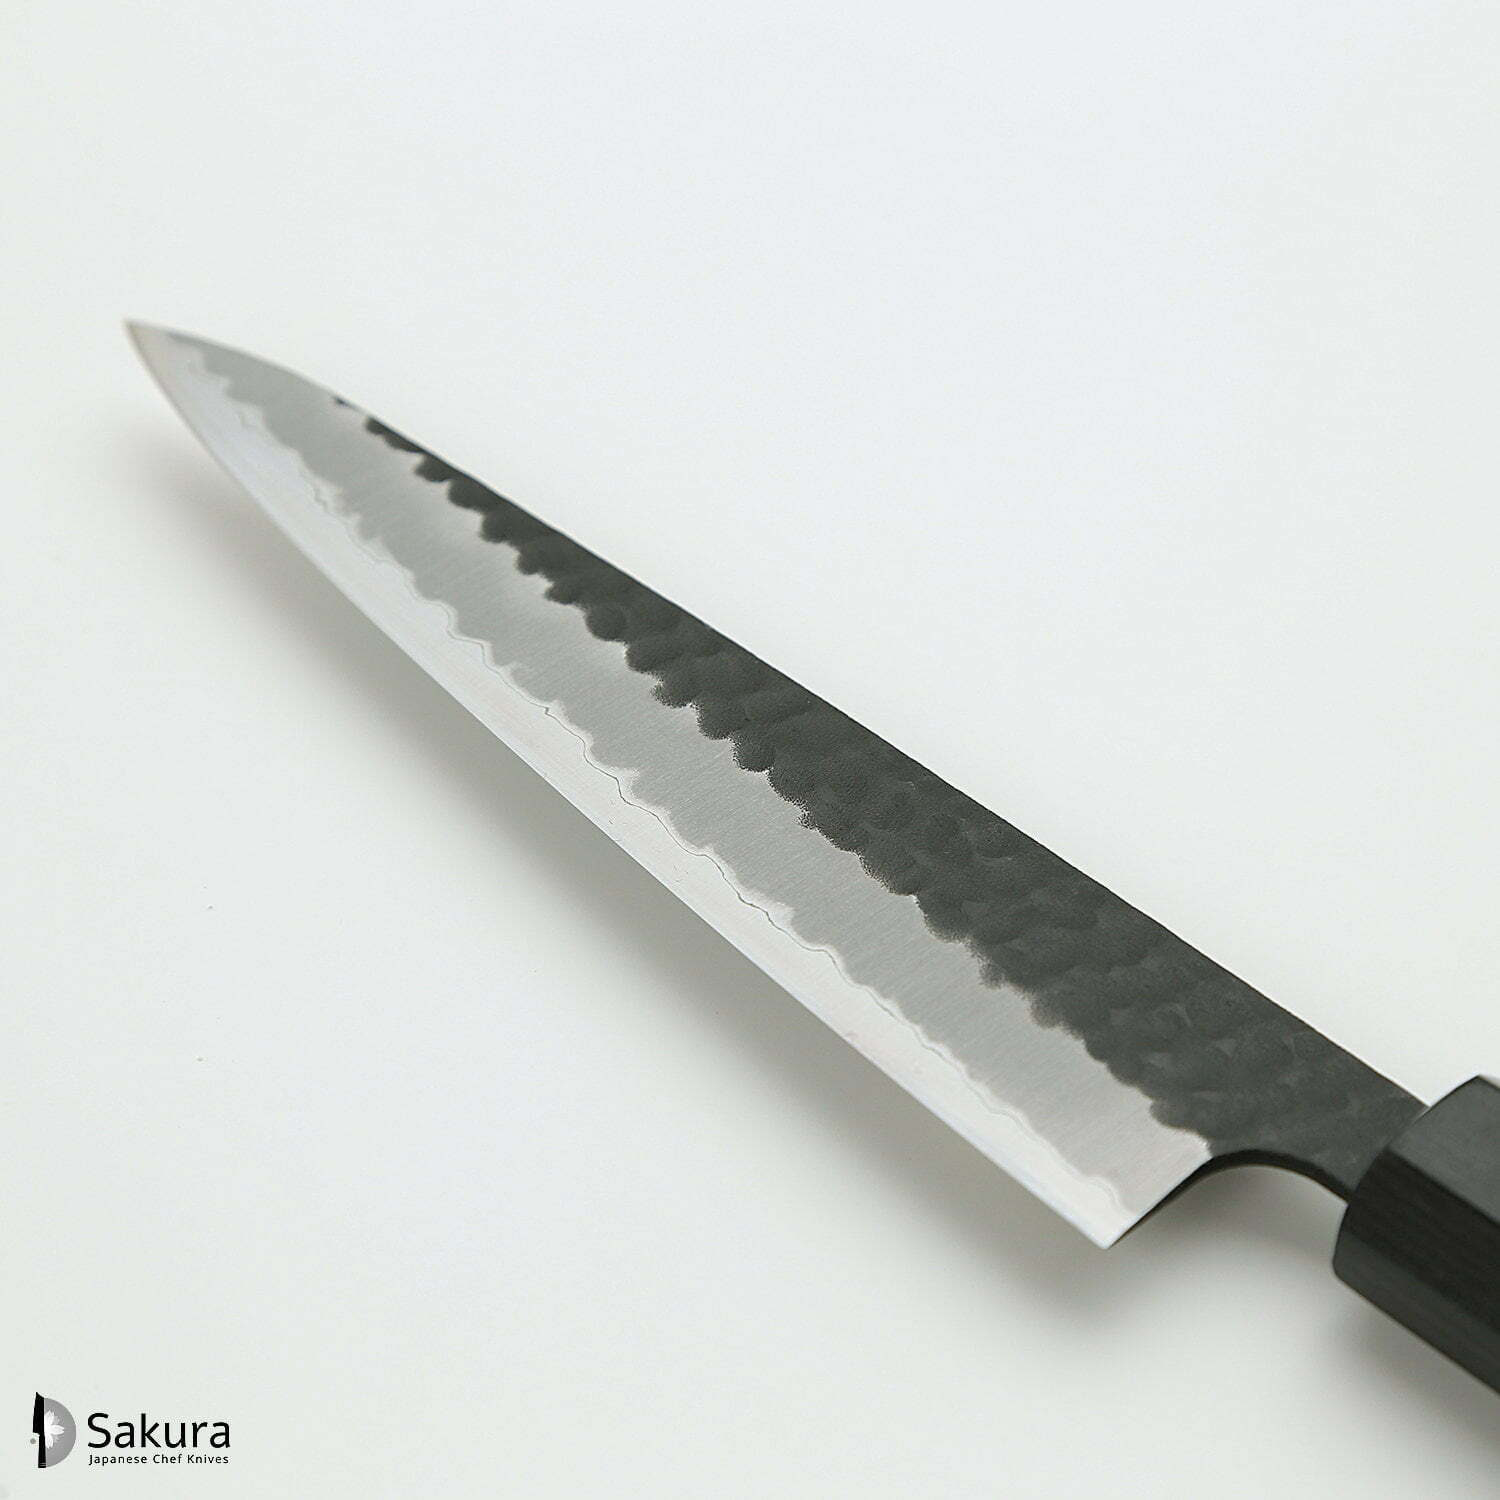 סכין עזר קטנה רב-תכליתית פֶּטִי 135מ״מ מחוזקת 3 שכבות: פלדת פחמן יפנית מתקדמת מסוג Aogami Super עטופה פלדת אל-חלד גימור קורואיצ׳י שחור עם ריקוע פטיש ג׳יקו סאקאיי יפן